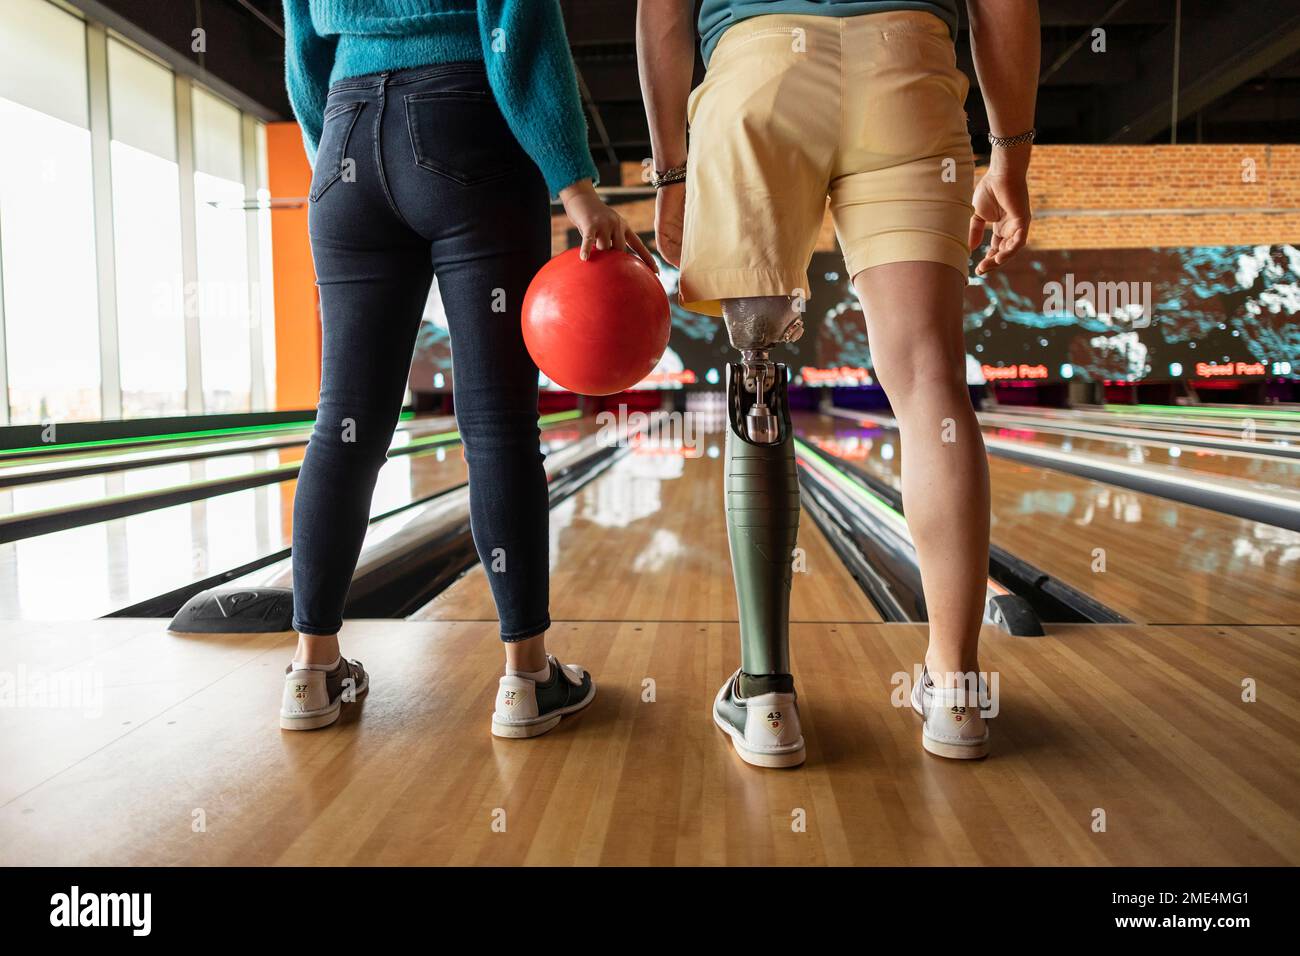 Eine Frau, die mit einer Freundin Ball hält und künstliche Gliedmaßen trägt, steht auf dem Parkettboden in der Bowlingbahn Stockfoto